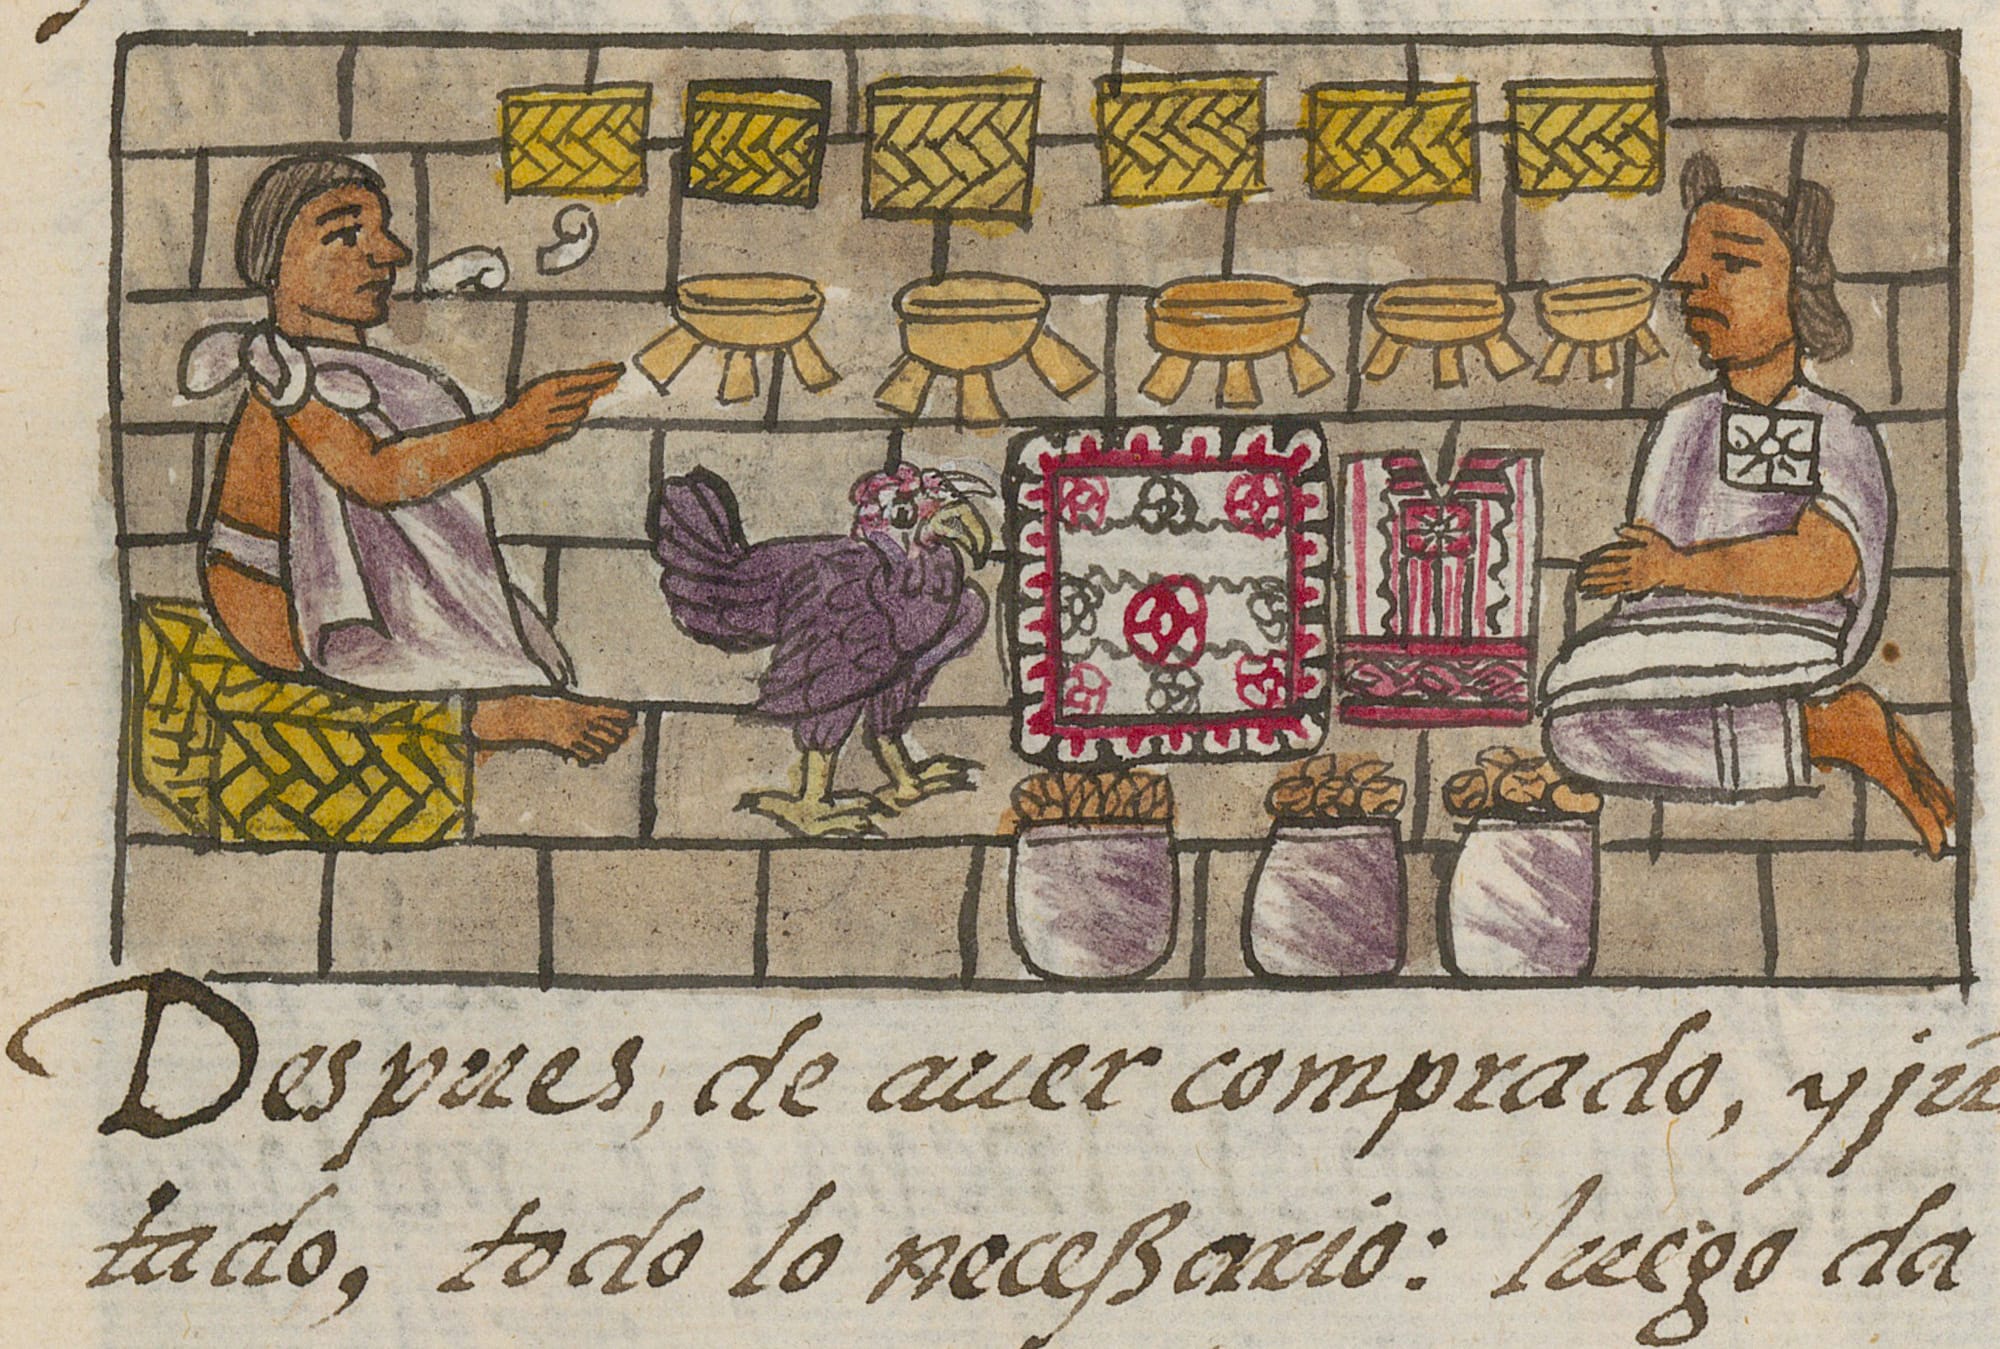 turkey image from Florentine Codex